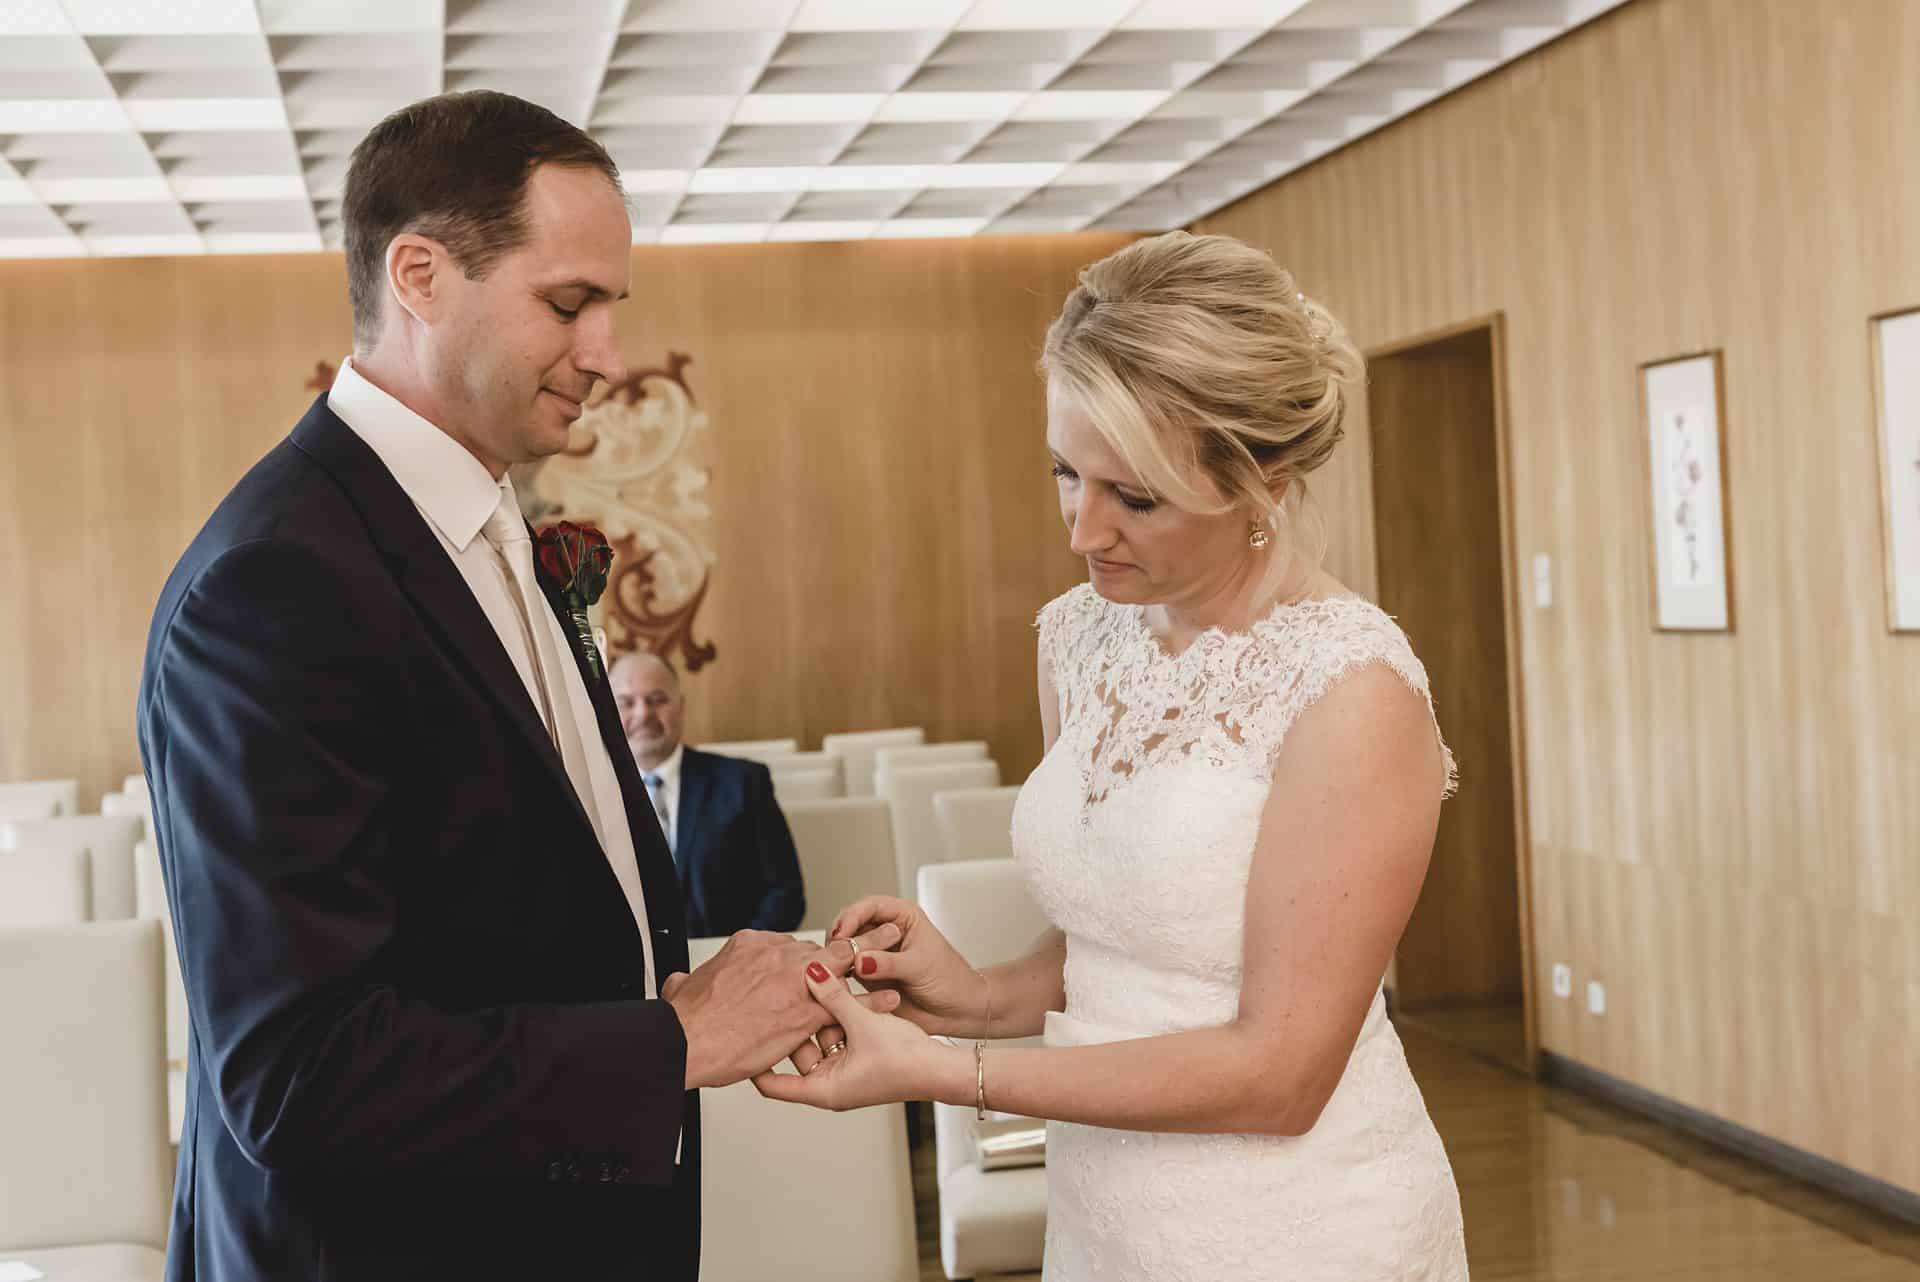 Eine Braut und ein Bräutigam tauschen in einem Raum ihre Ringe aus.